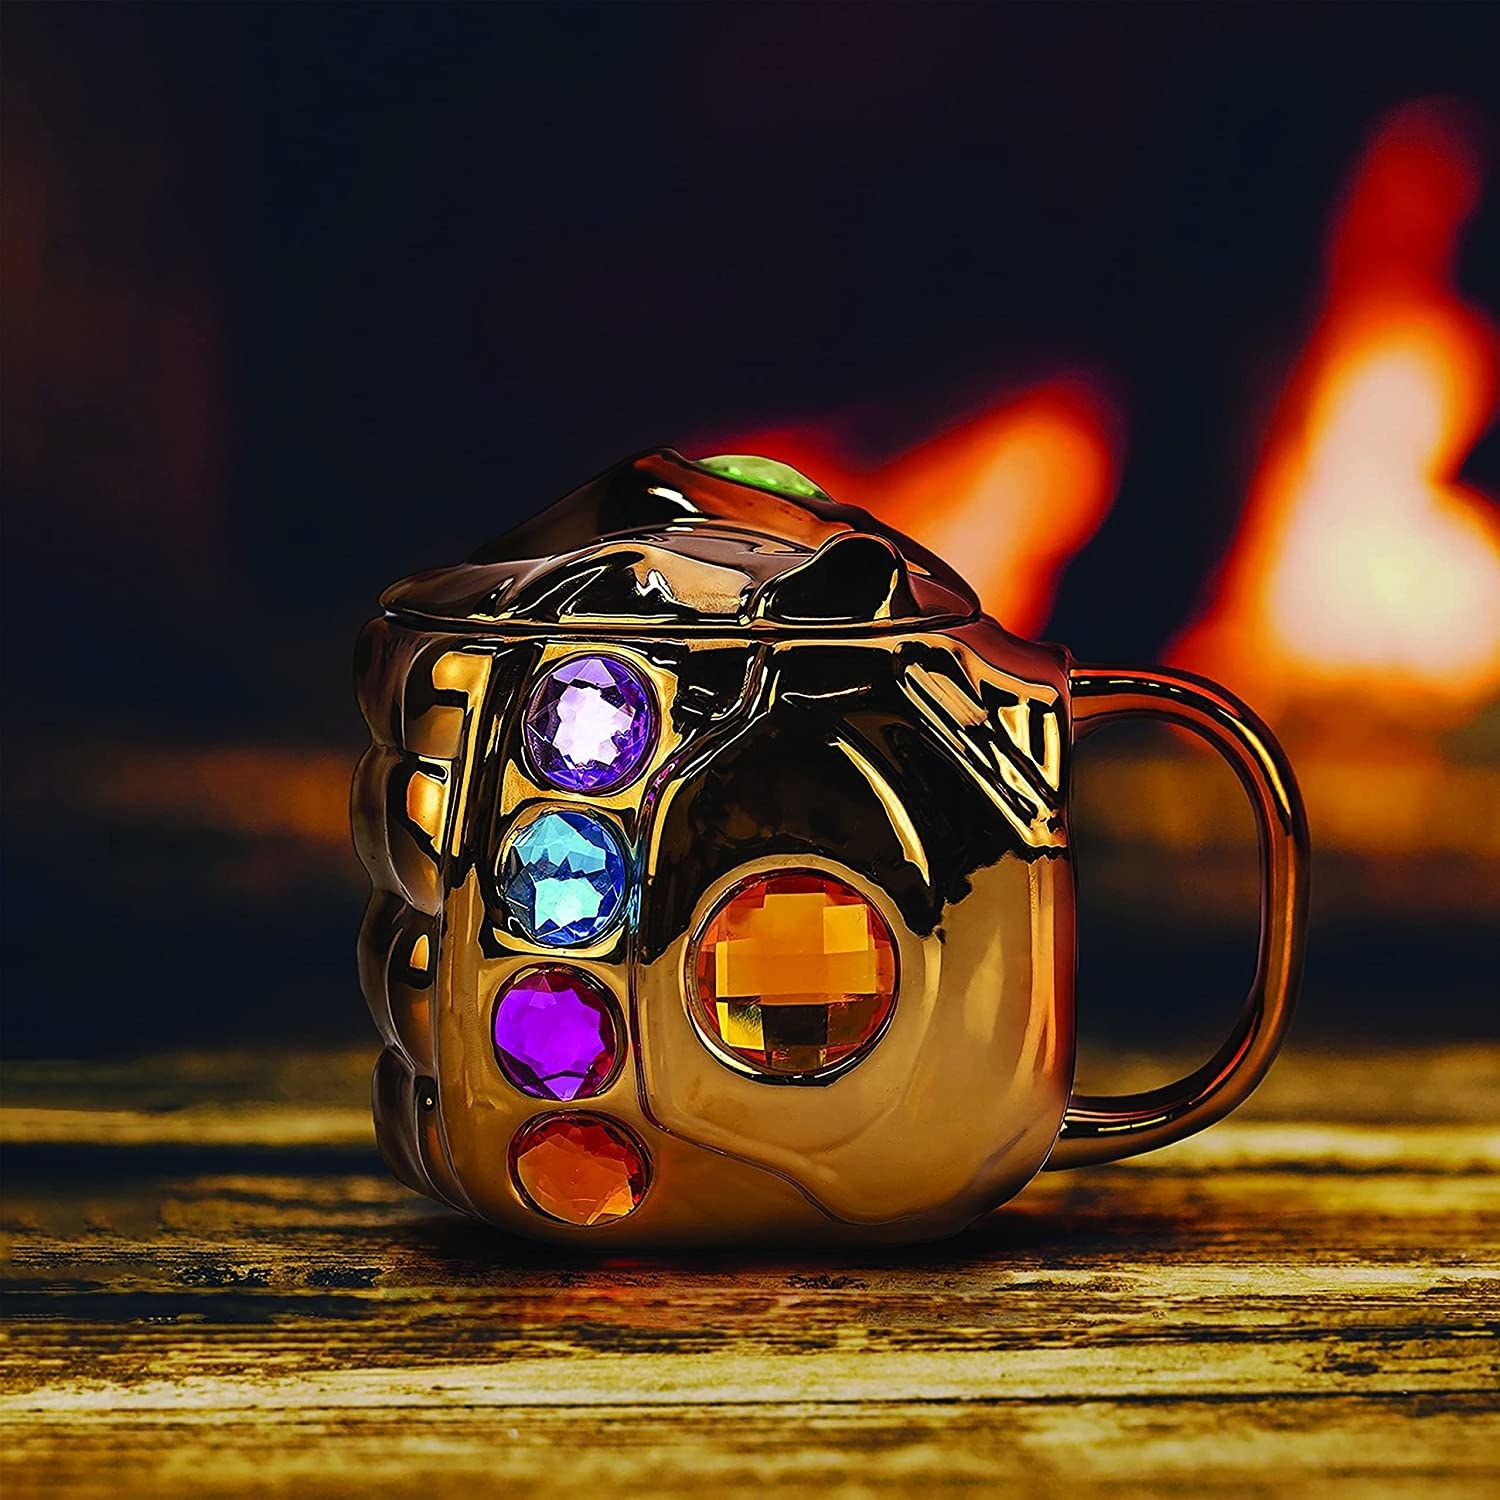 taz de cerámica con forma de la mano de Thanos